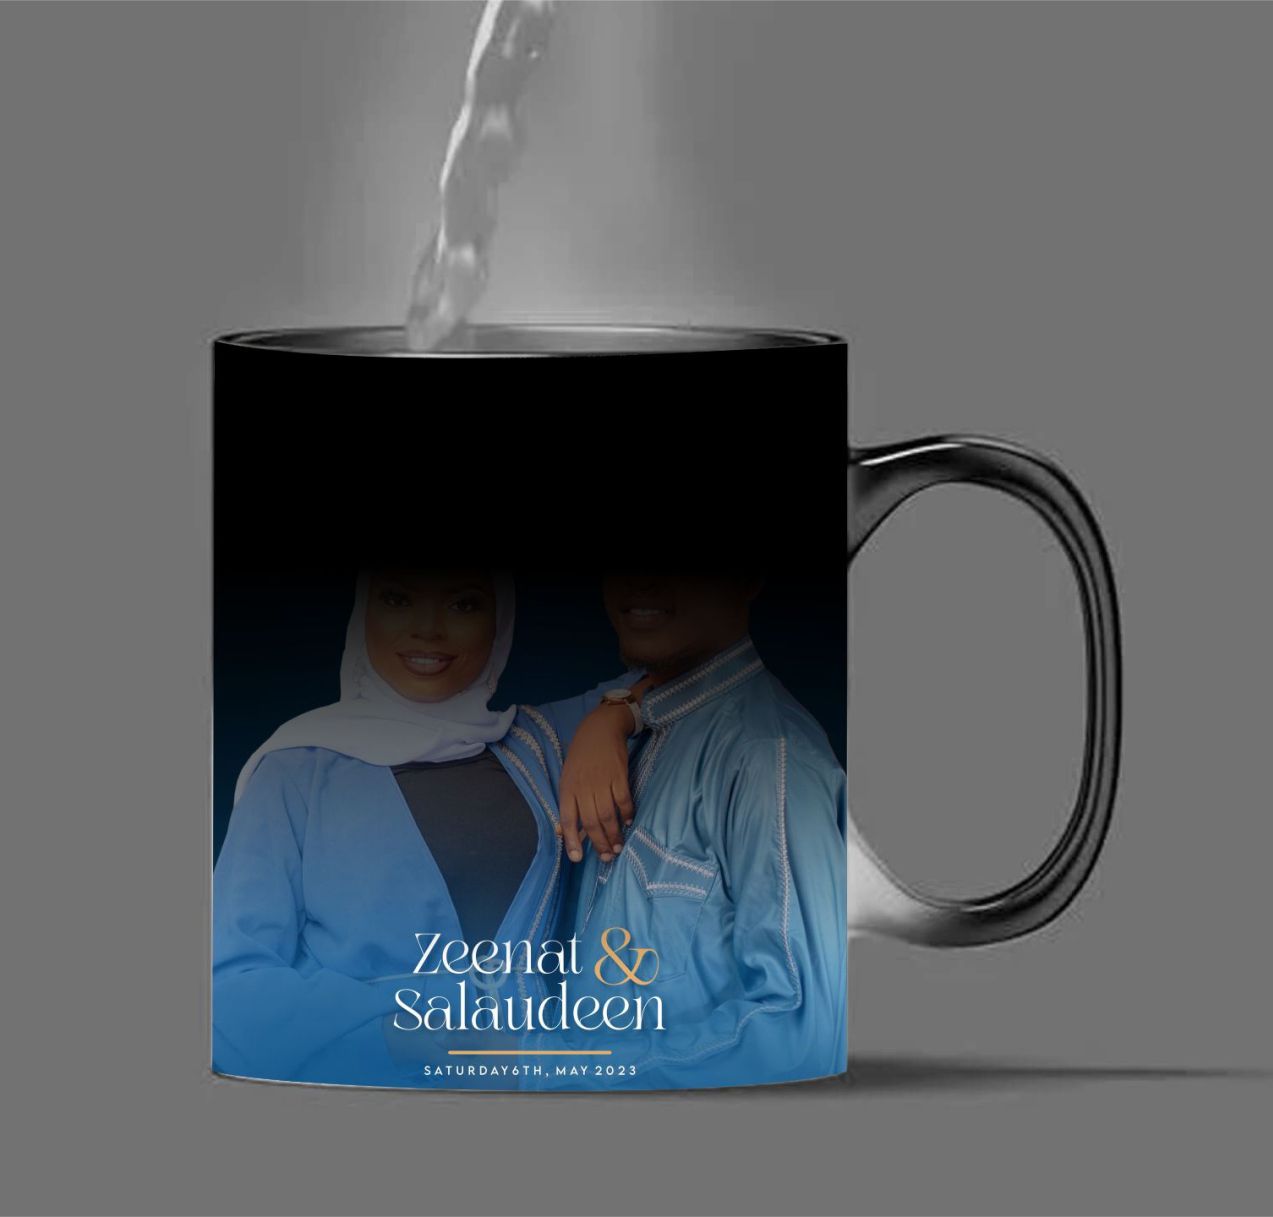 Best quality magic mug design & printing in lagos nigeria